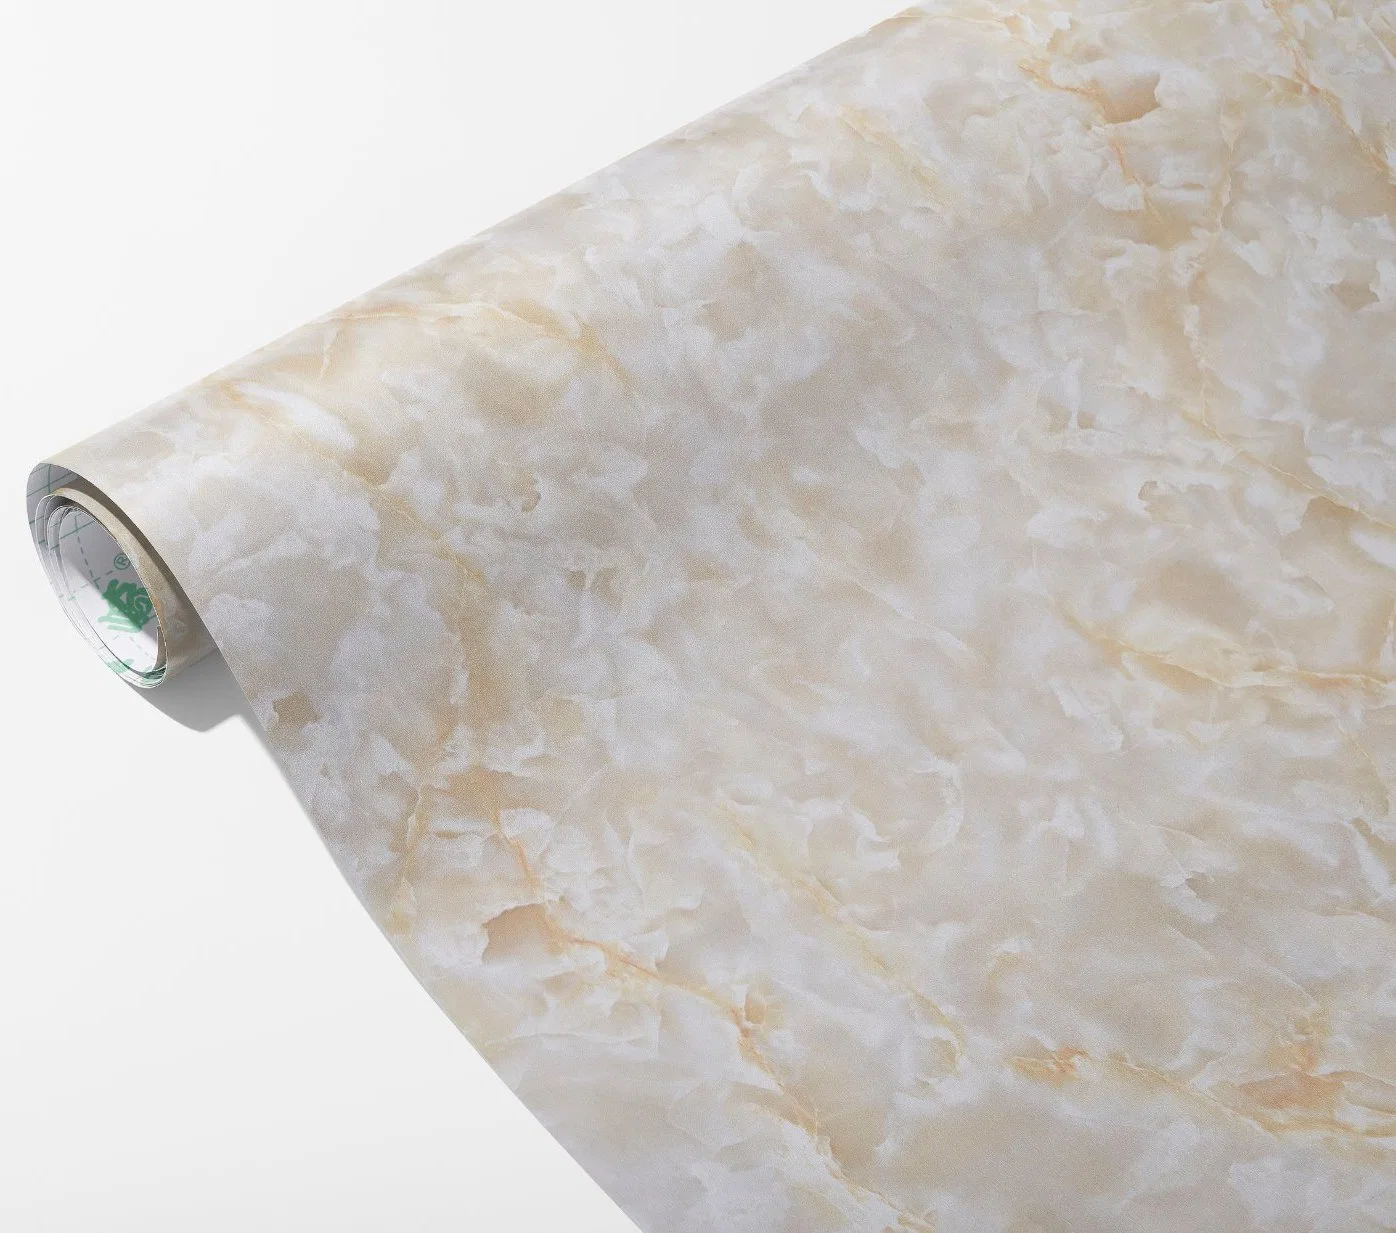 Октяки Китай Завод Современный дизайн Дешный камень винил стены Бумажные рулоны Мраморный водонепроницаемый настенный покрытия ПВХ самоклеящиеся обои